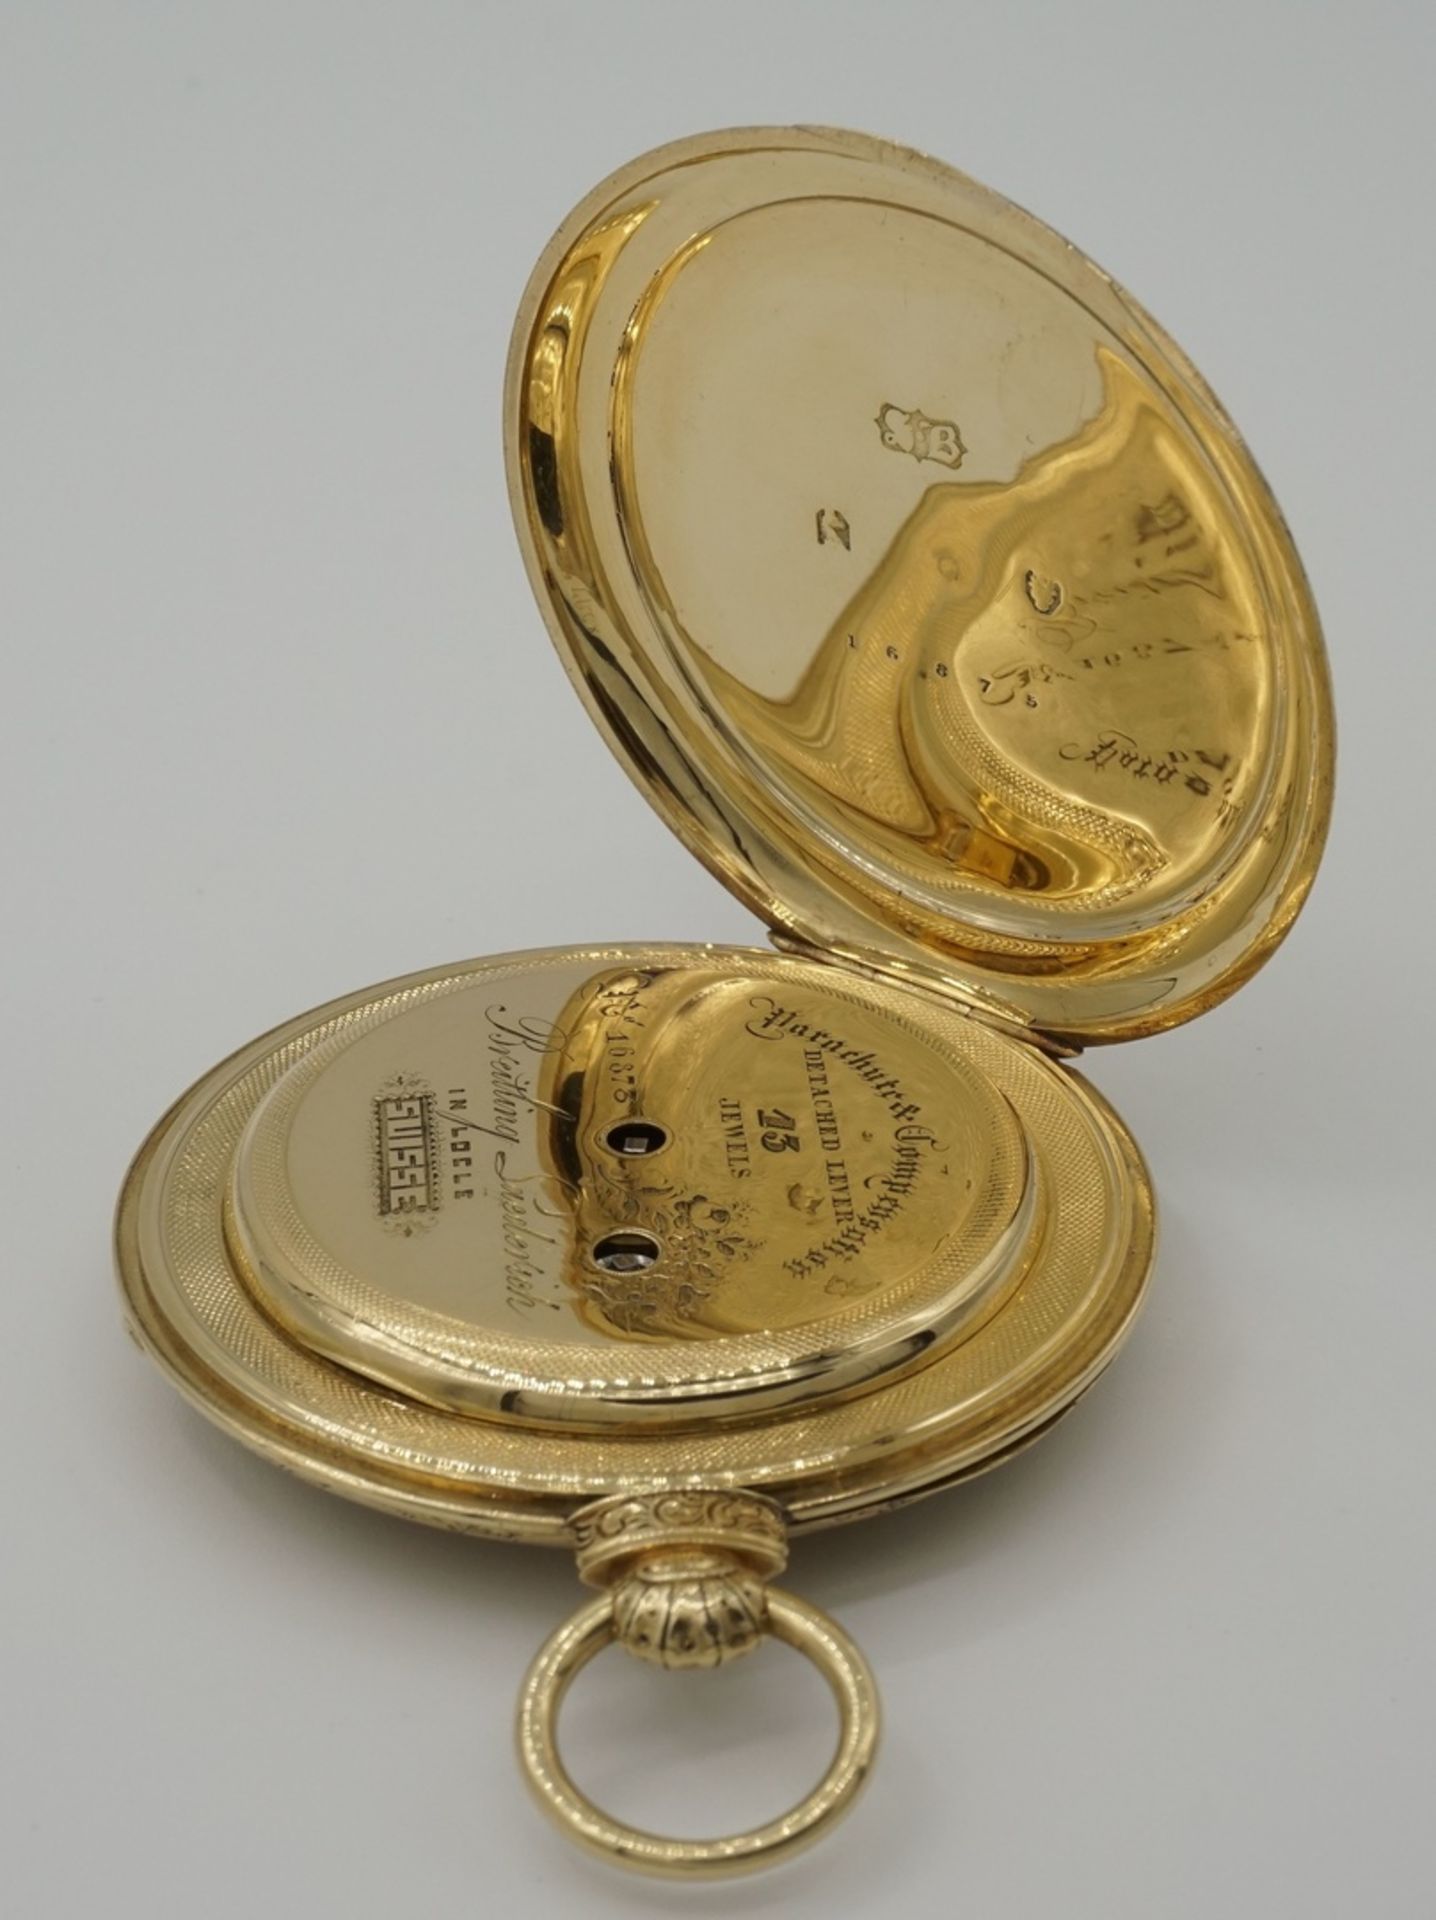 Breitling Laederich, Locle, Herrentaschenuhr mit aufwendig gravierten Gehäuse, um 1850750/- - Bild 3 aus 5